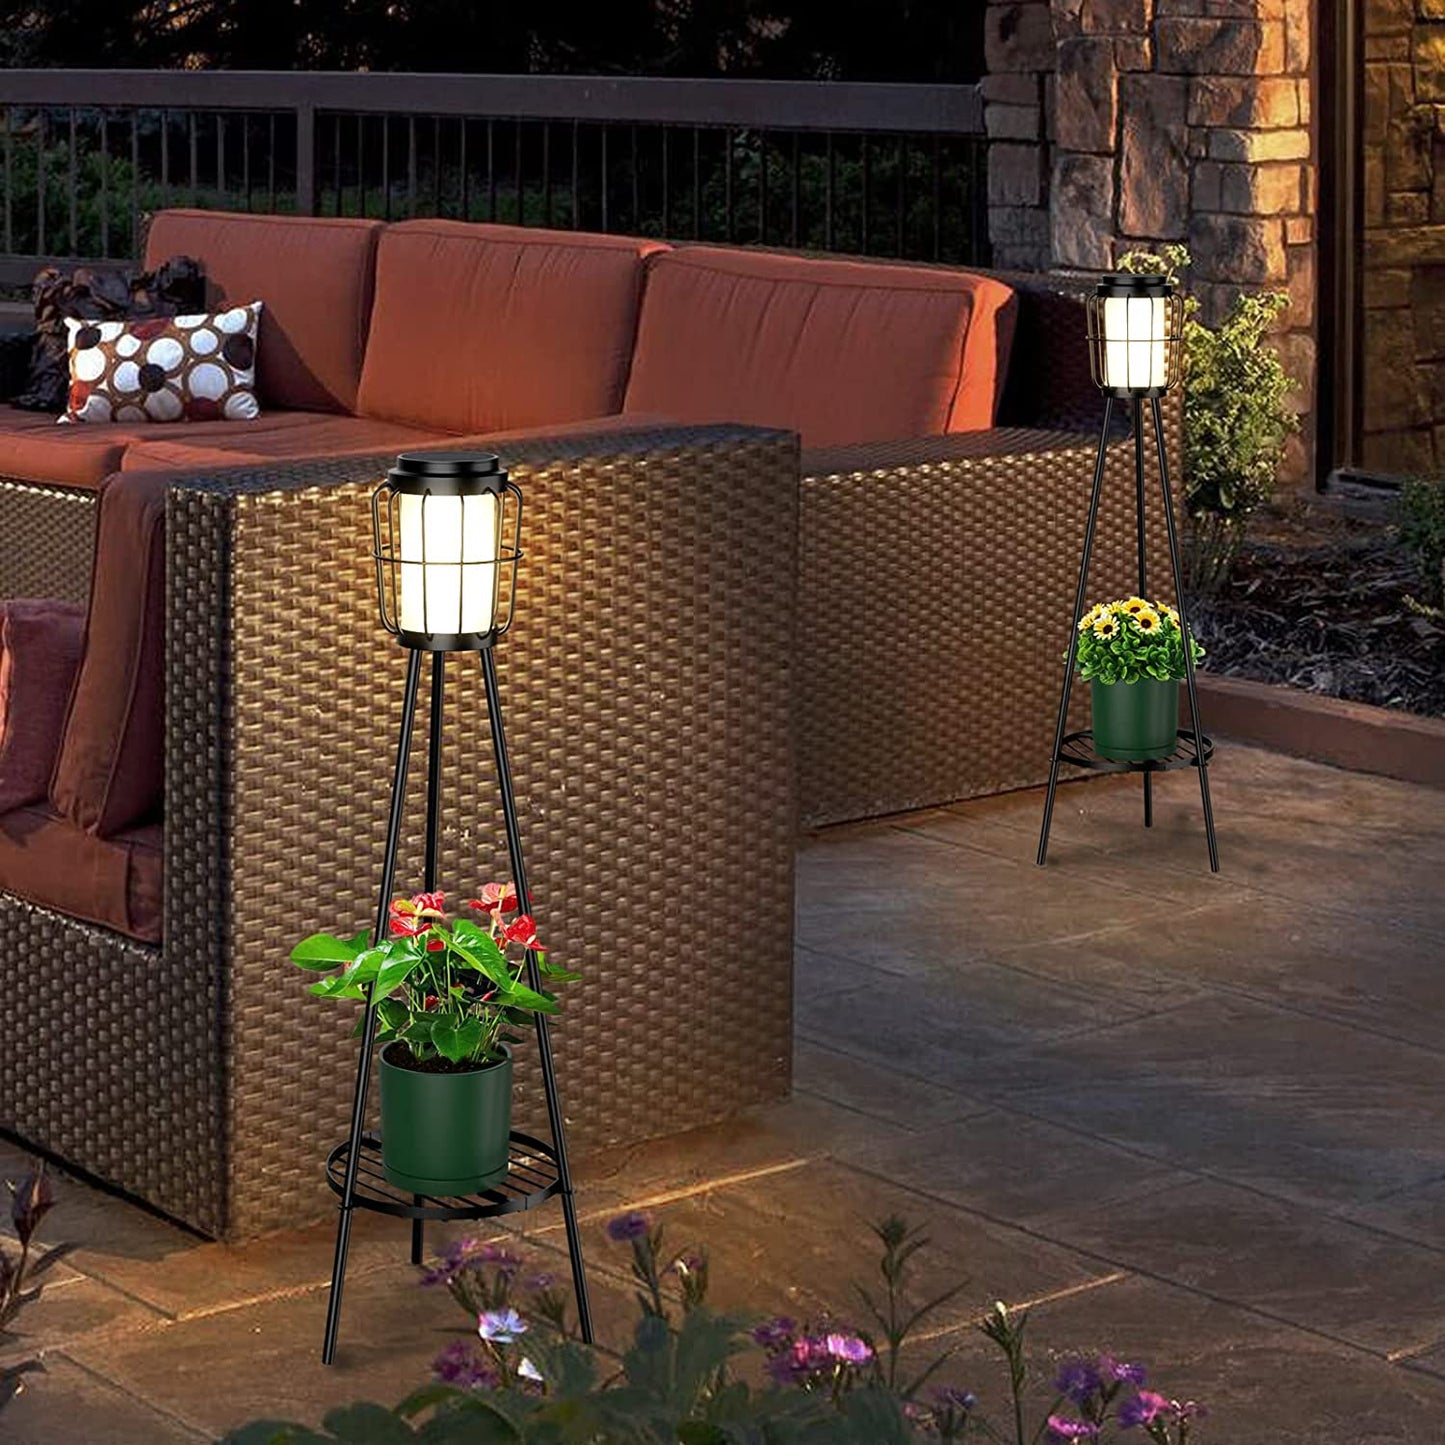 Solar Outdoor Floor Lamp Waterproof (2pcs), Metal Solar Lights Outdoor with Plant Stand, Outdoor Lamp for Deck Patio Yard Garden Decor